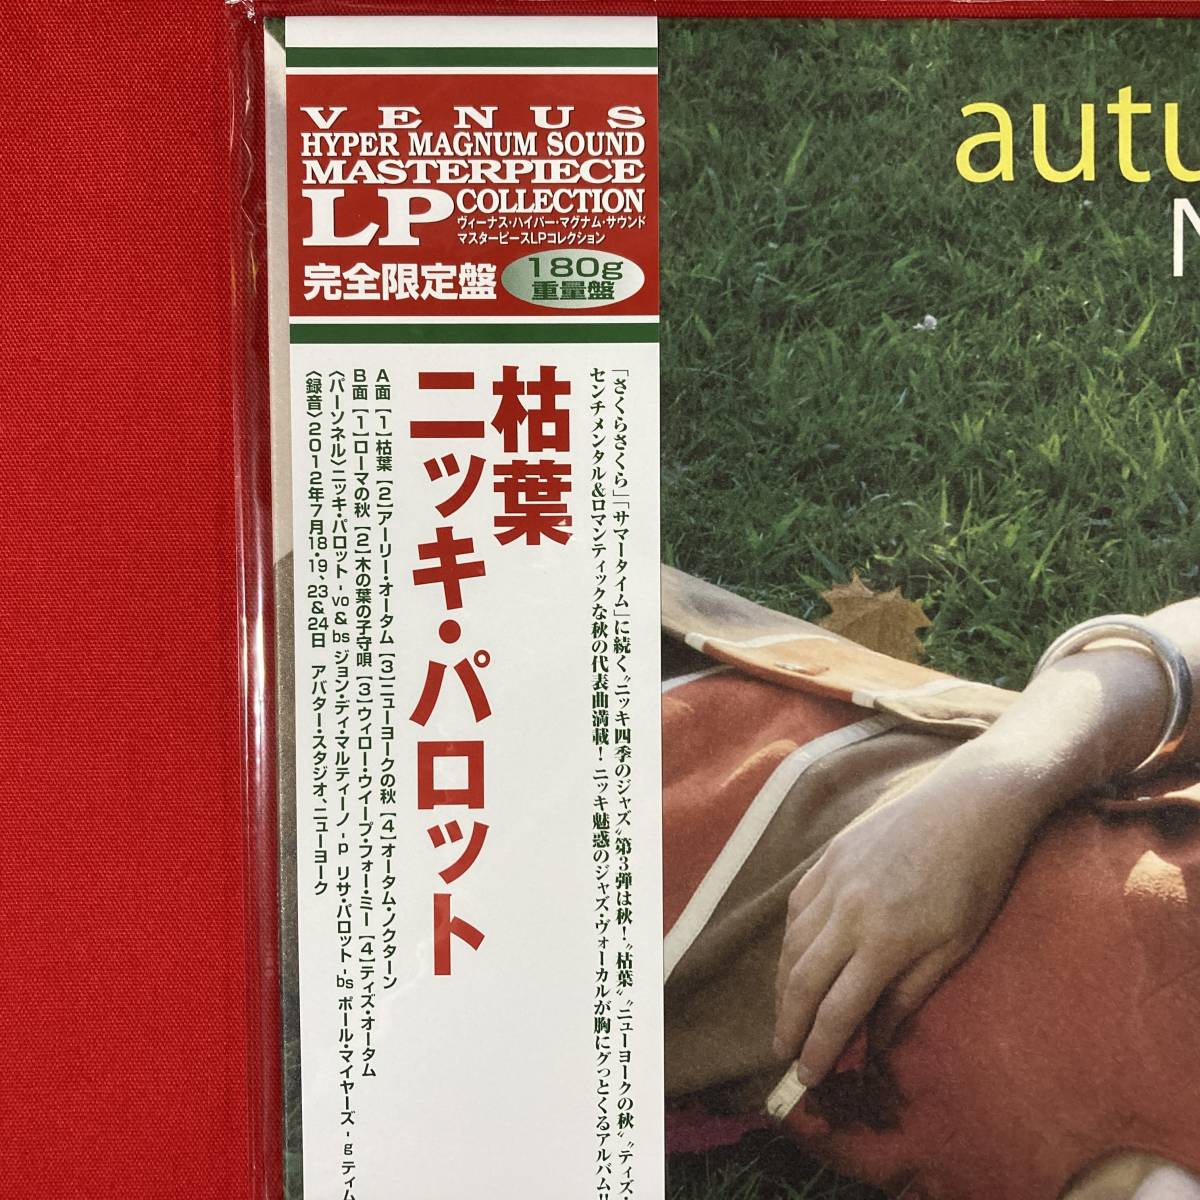 新品 ニッキ・パロット 枯葉 Nicki Parrott Autumn Leaves 送料500円(最安値) Venus Hyper Magnum Sound 1LP 限定盤 180グラム重量盤の画像3